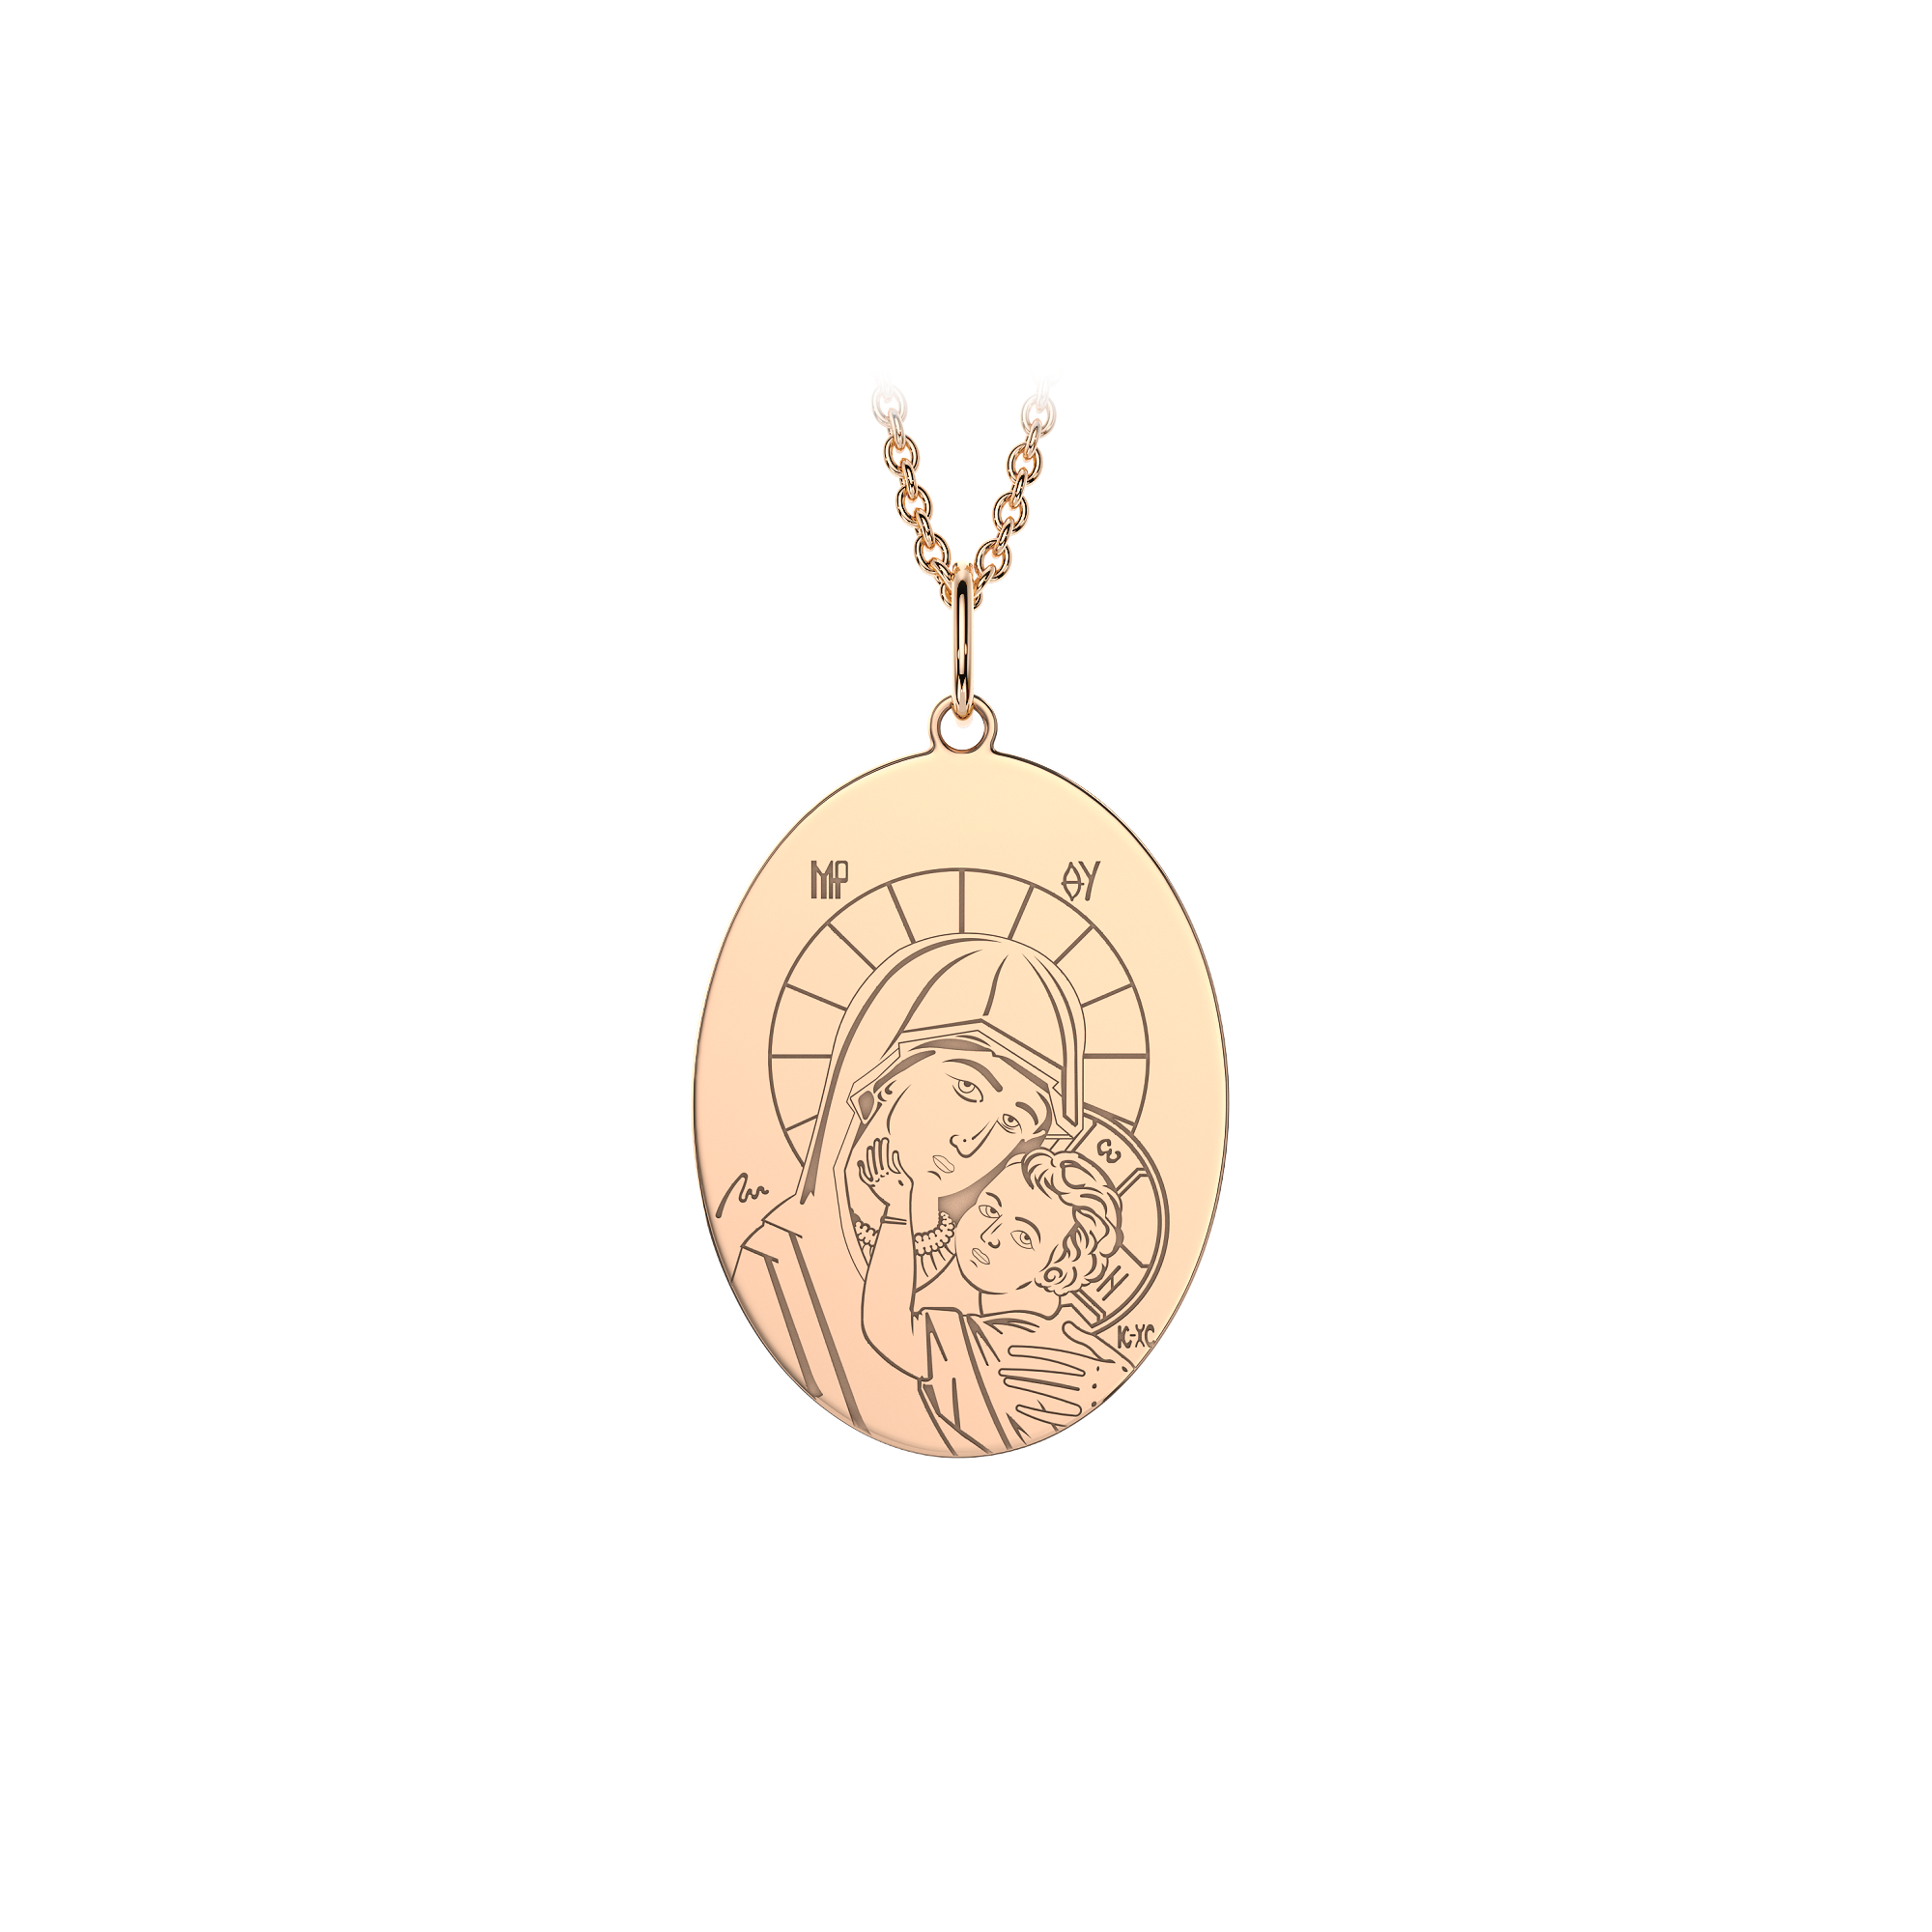 14 k rose gold Virgin Mary pendant